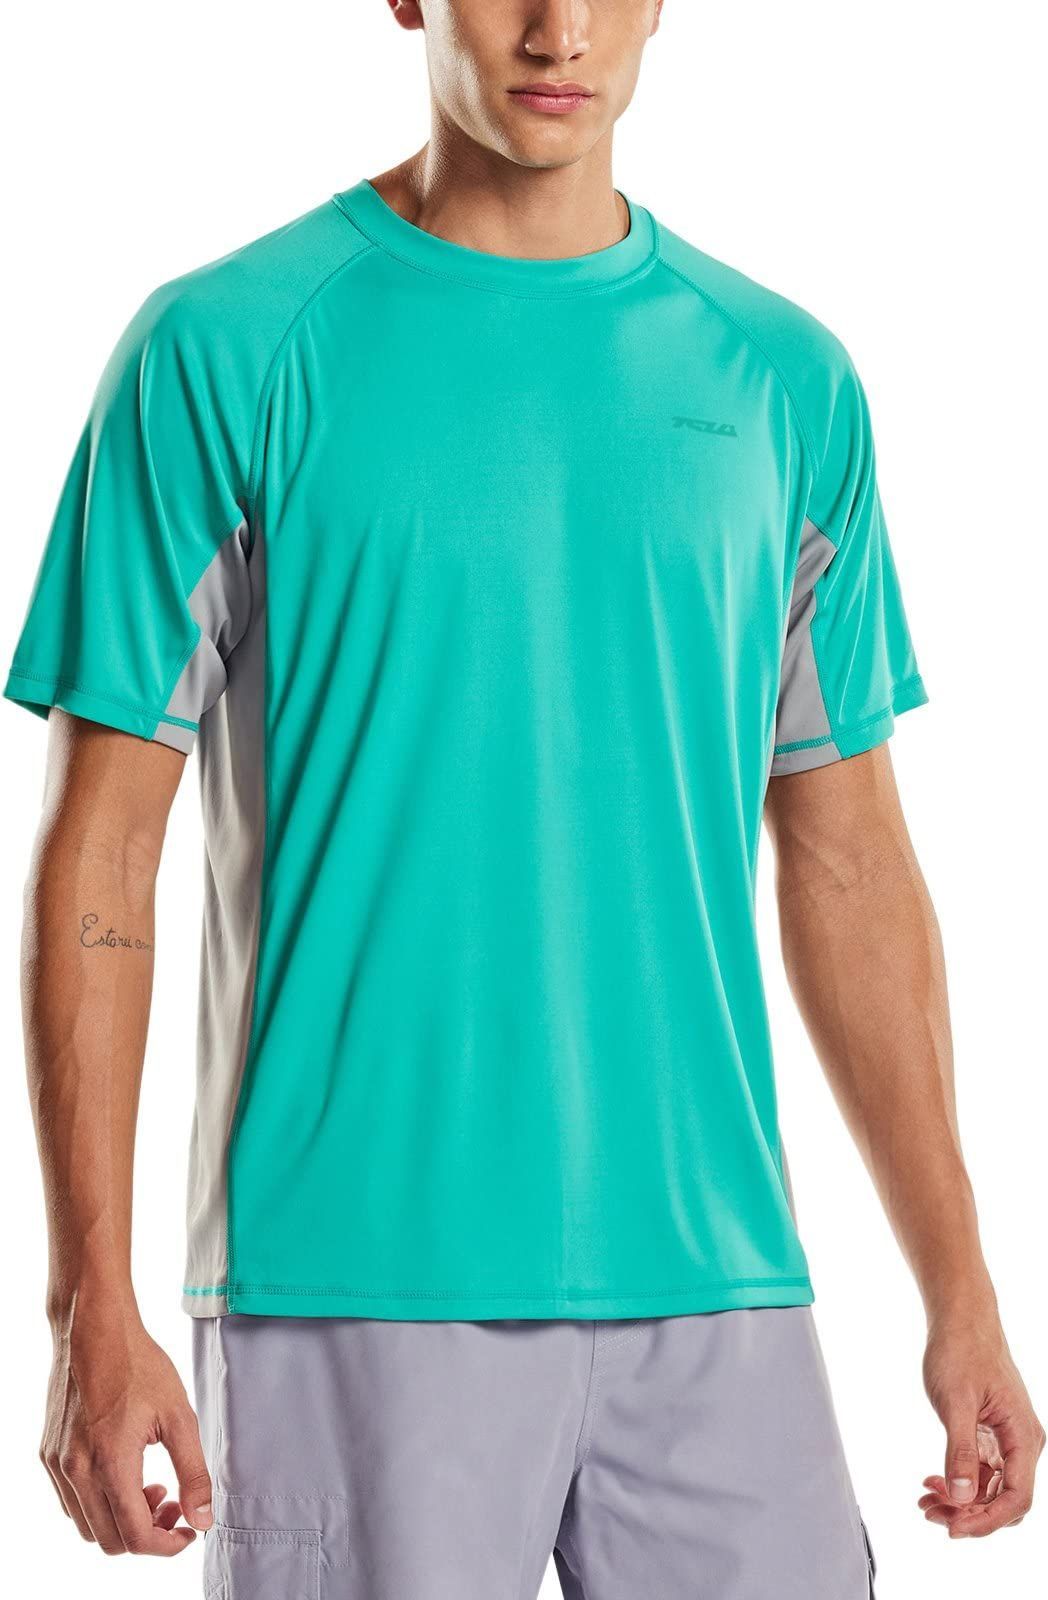 至上 テスラ ラッシュガード 半袖 メンズ 水着 夏 UVカット 速乾 通気性 レギュラーフィット スイムウェア スポーツ スイム Tシャツ  大きいサイズ TESLA MSS01